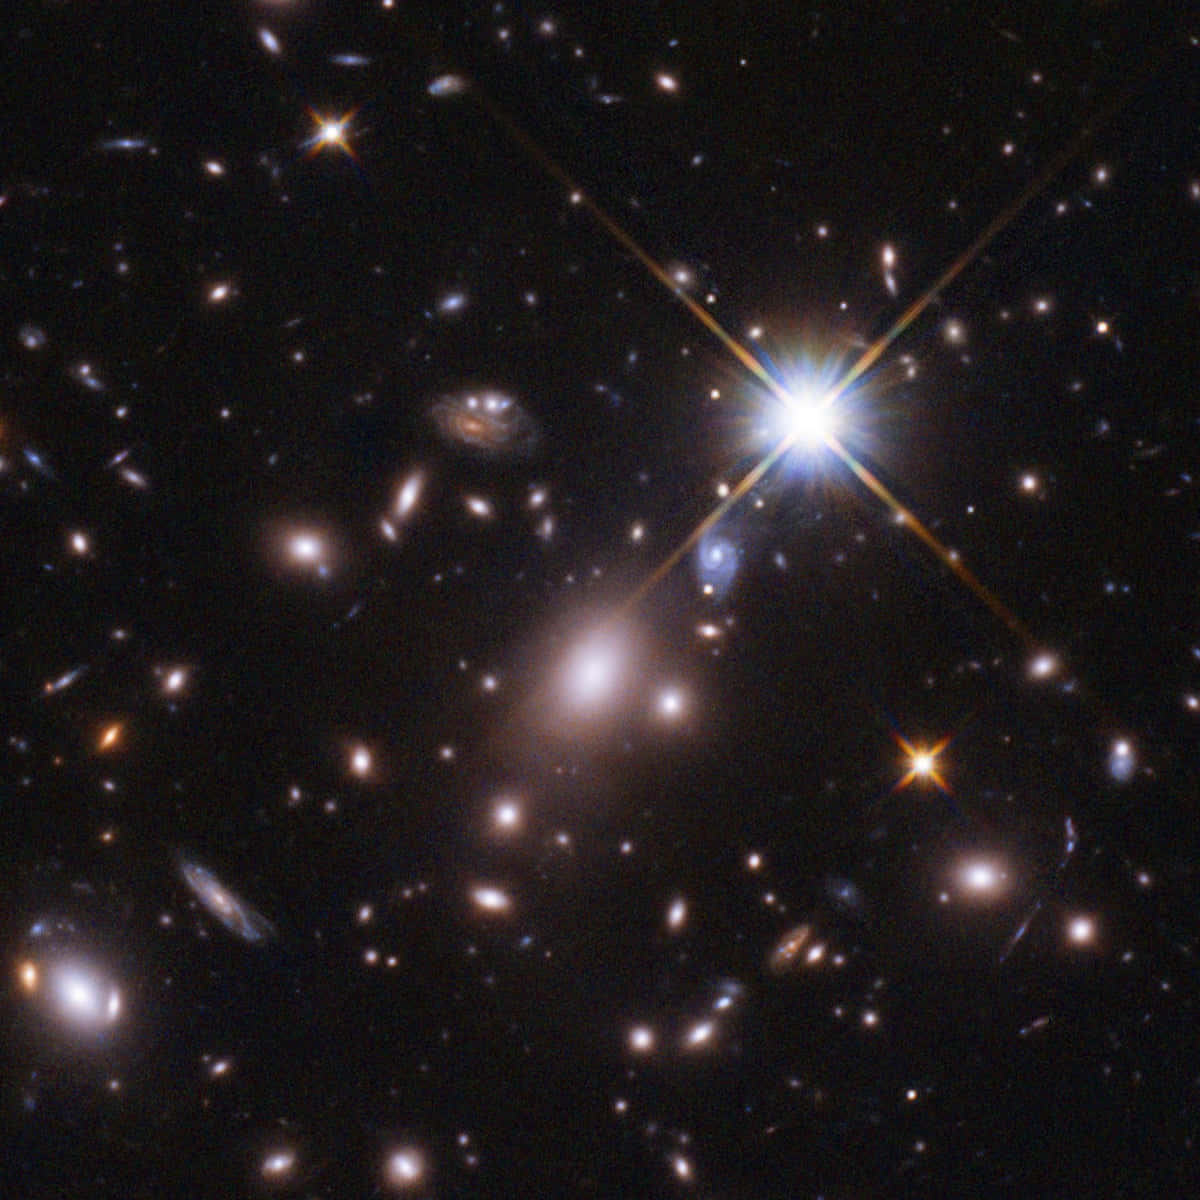 Imagende Estrellas Distantes En El Espacio De Hubble